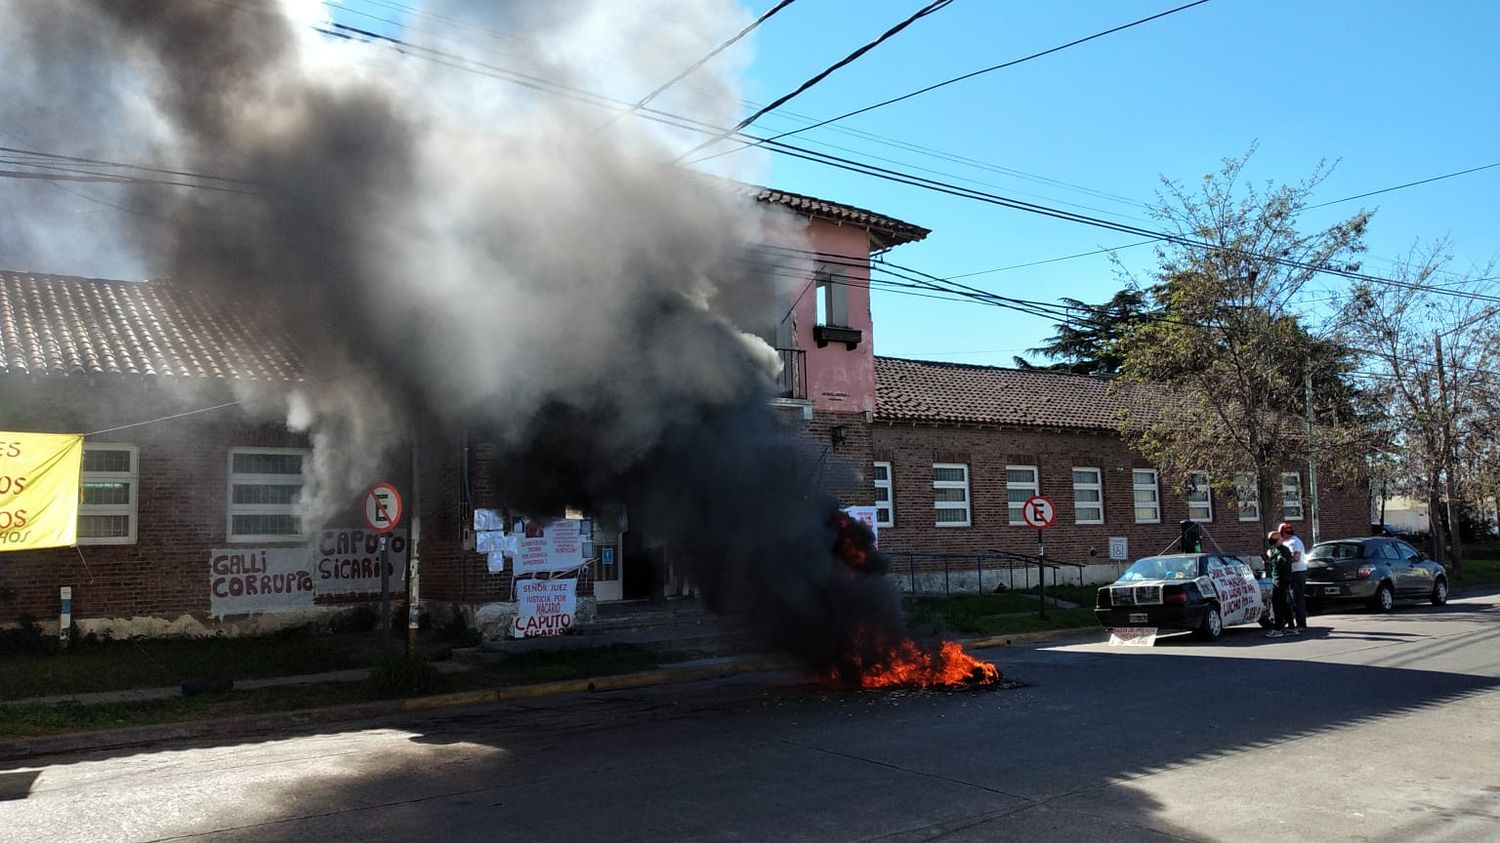 En reclamo por distintas causas, manifestantes quemaron varios neumáticos en la puerta de la fiscalía de Olavarría